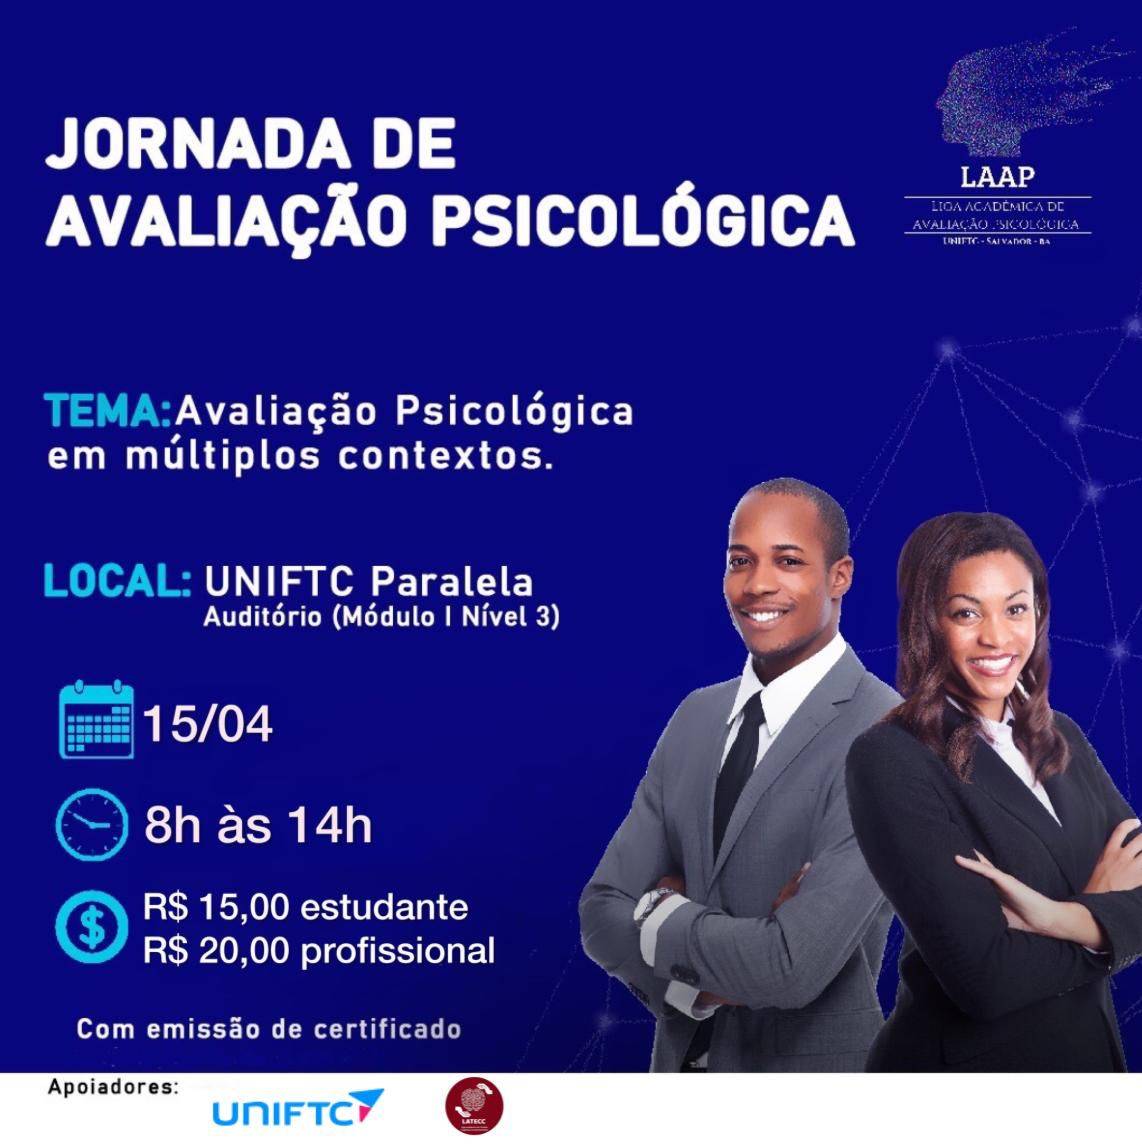 UniFTC e Laap realizam a 1ª Jornada de Avaliação Psicológica em Salvador